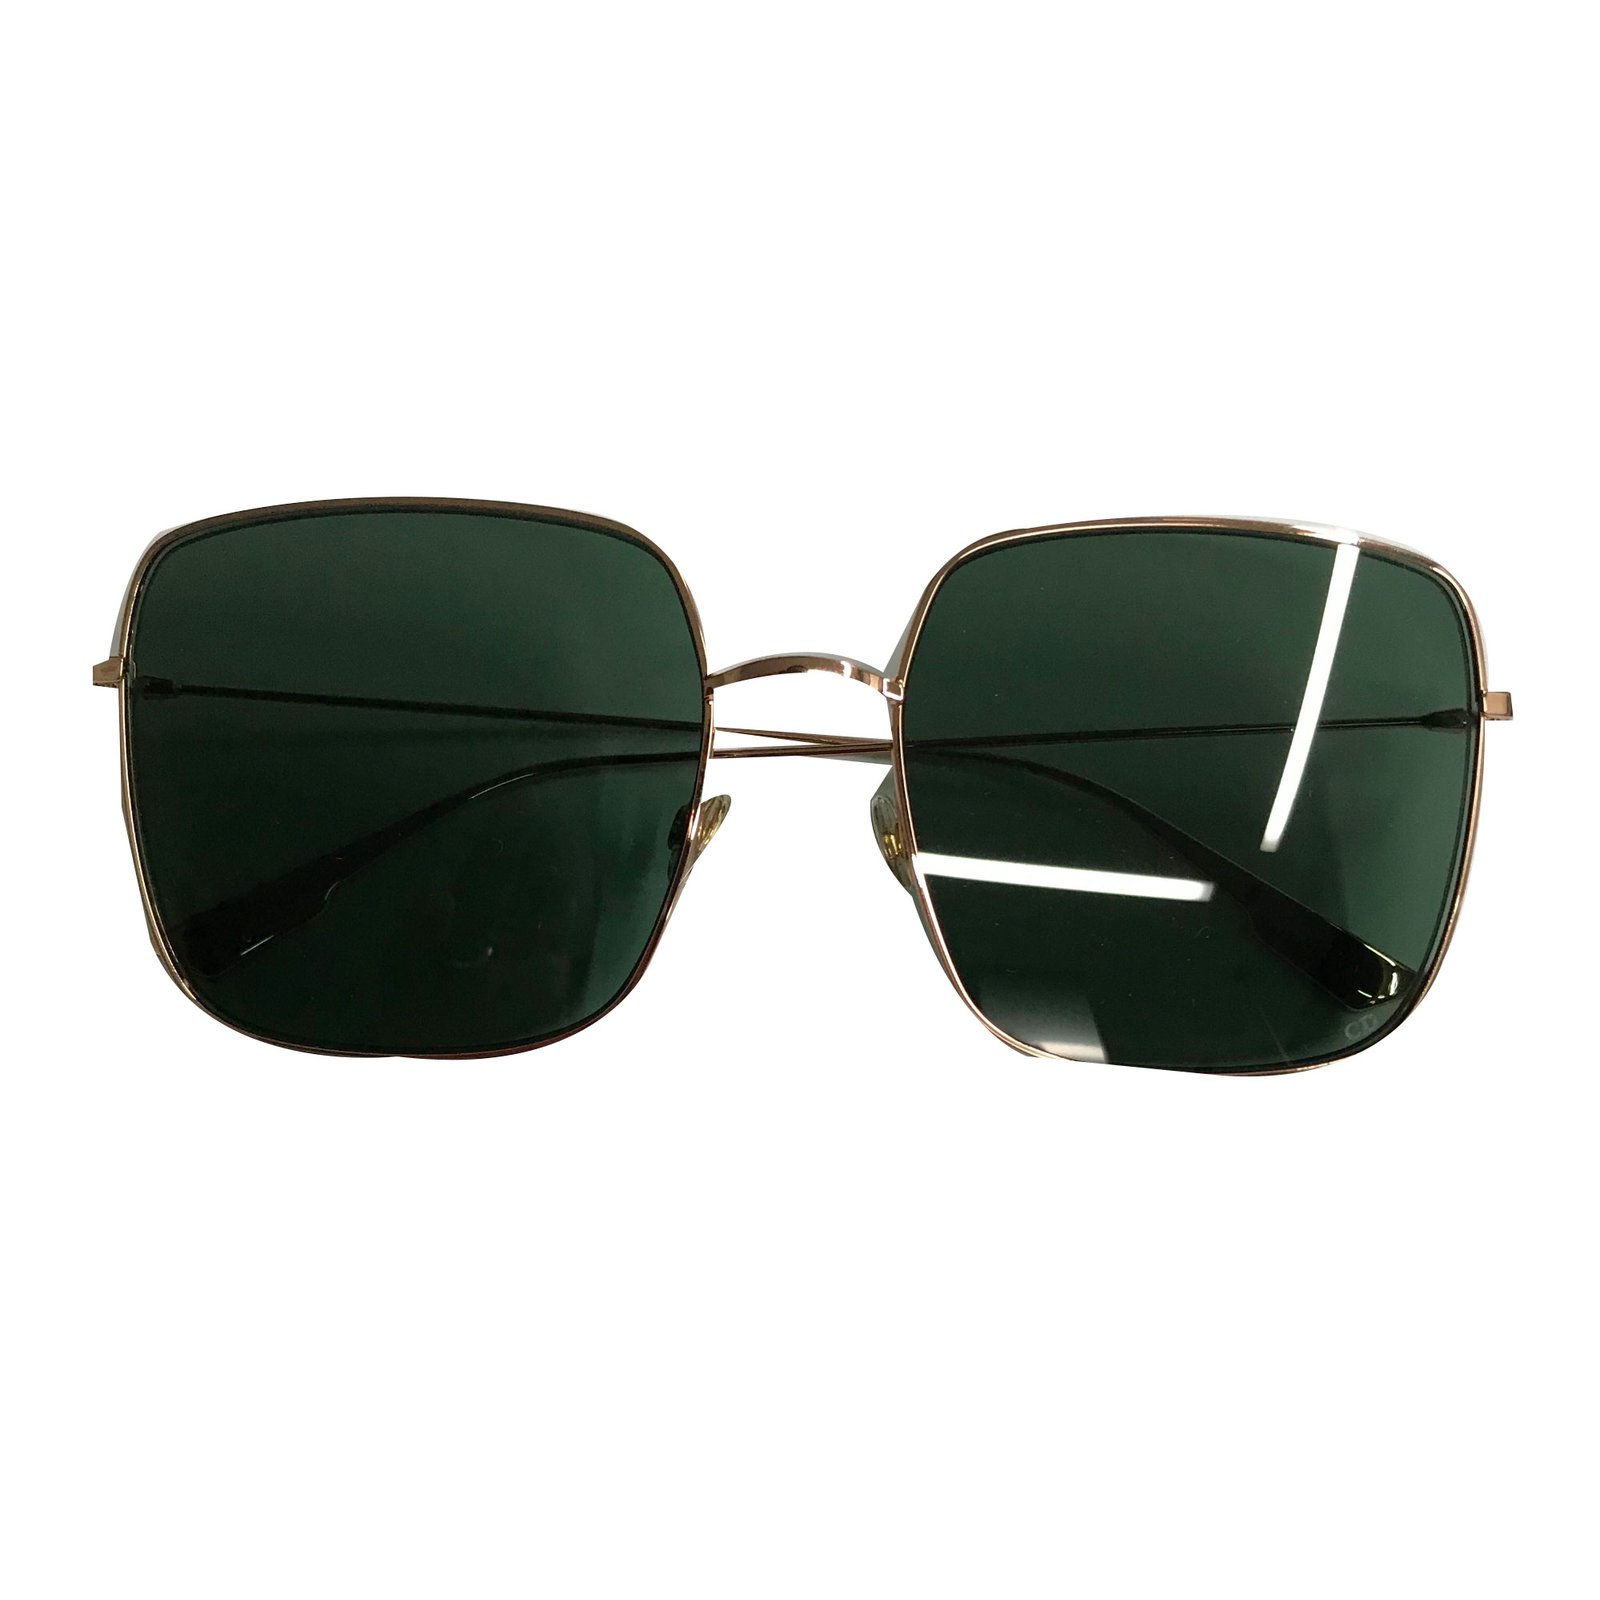 Dior Sunglasses Stellaire Store, 51% OFF | www.pegasusaerogroup.com